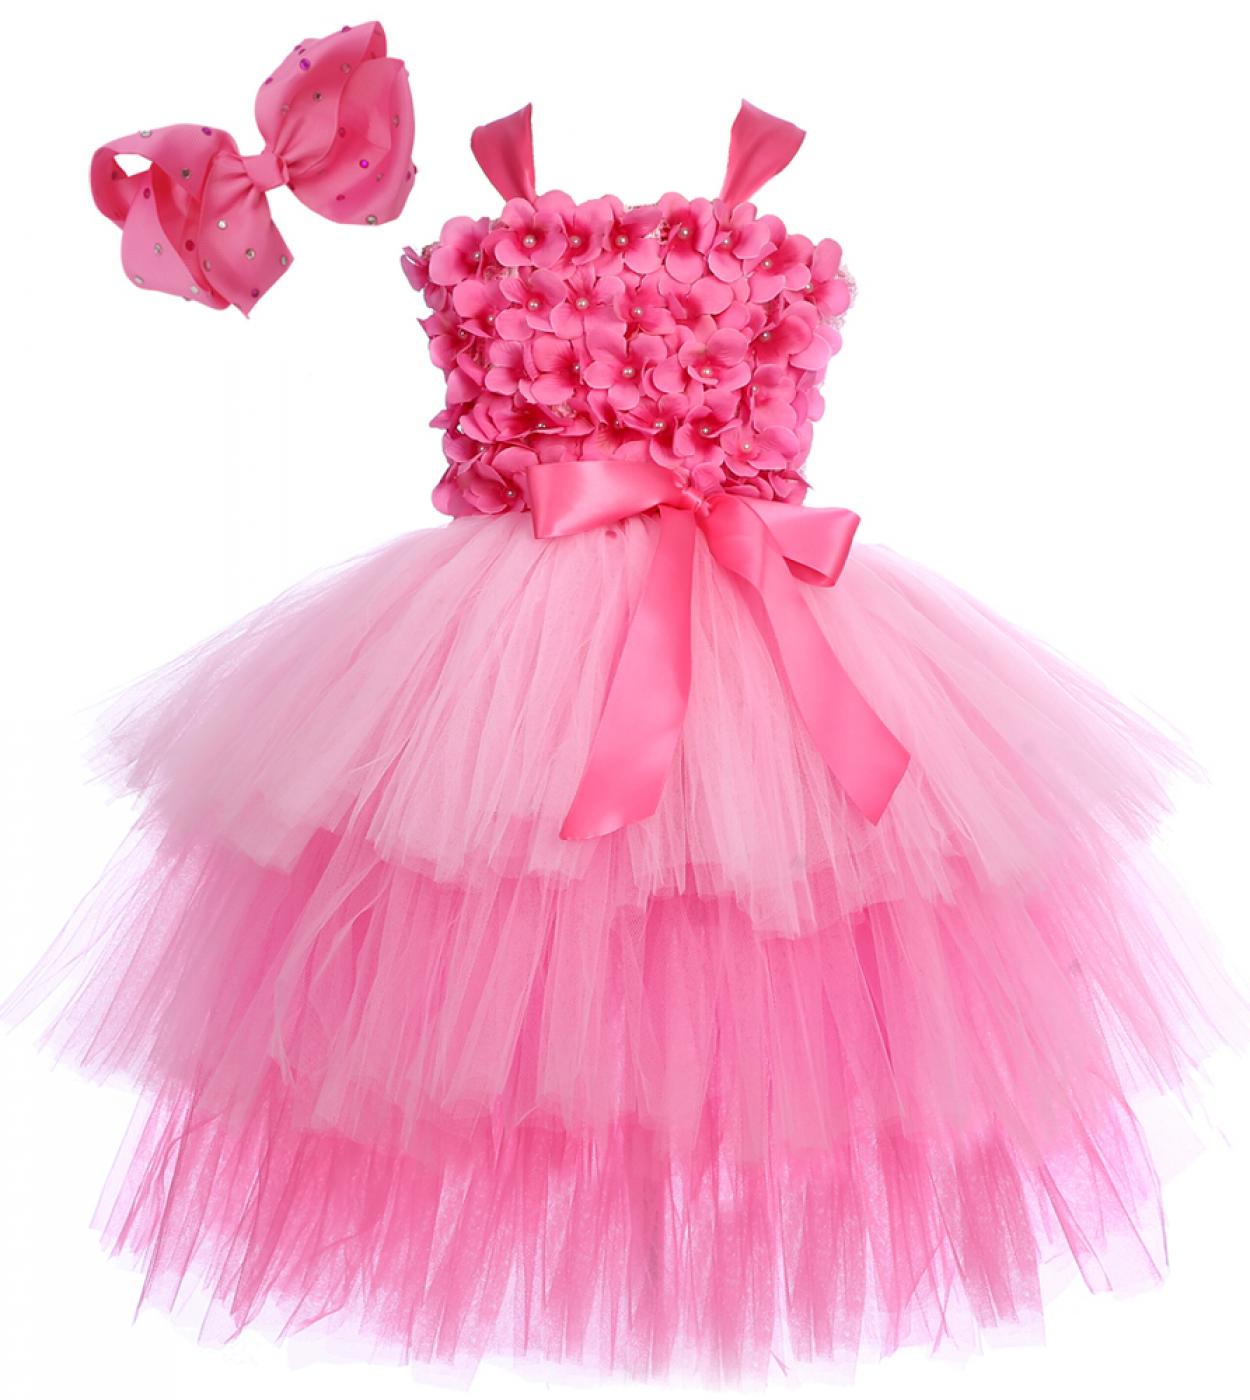 3 طبقات الوردي زهرة فتاة فساتين لحفل الزفاف عيد ميلاد ازياء للأطفال الغابات الجنية توتو اللباس الزي الأميرة